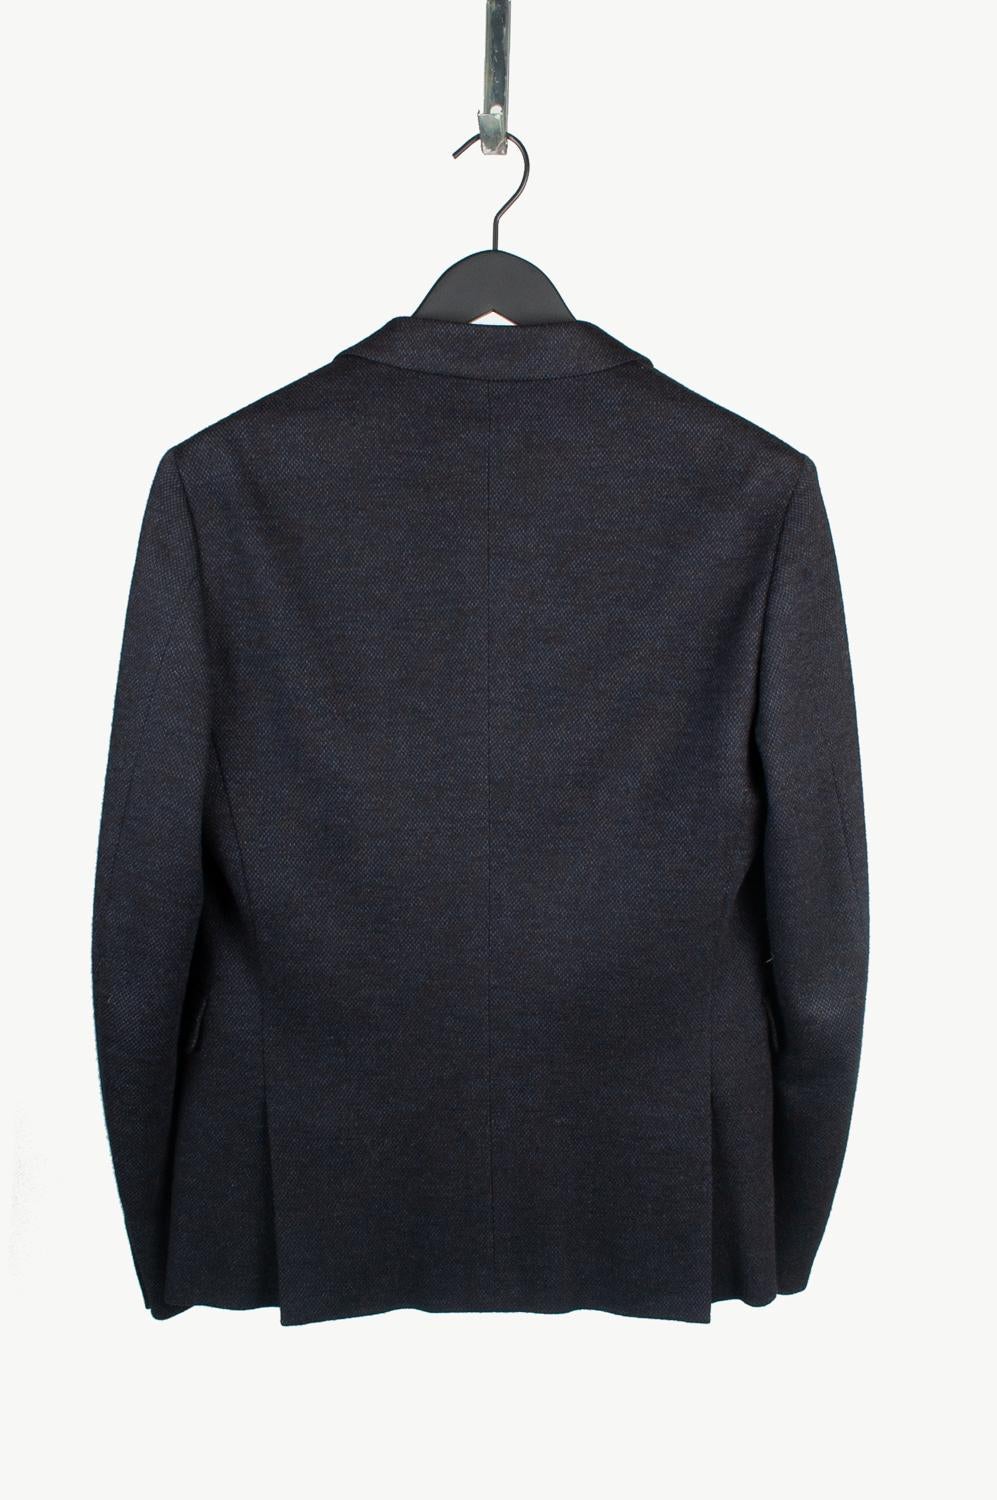 Prada Men Jacket Blazer Size ITA48 (M), S624 In New Condition For Sale In Kaunas, LT